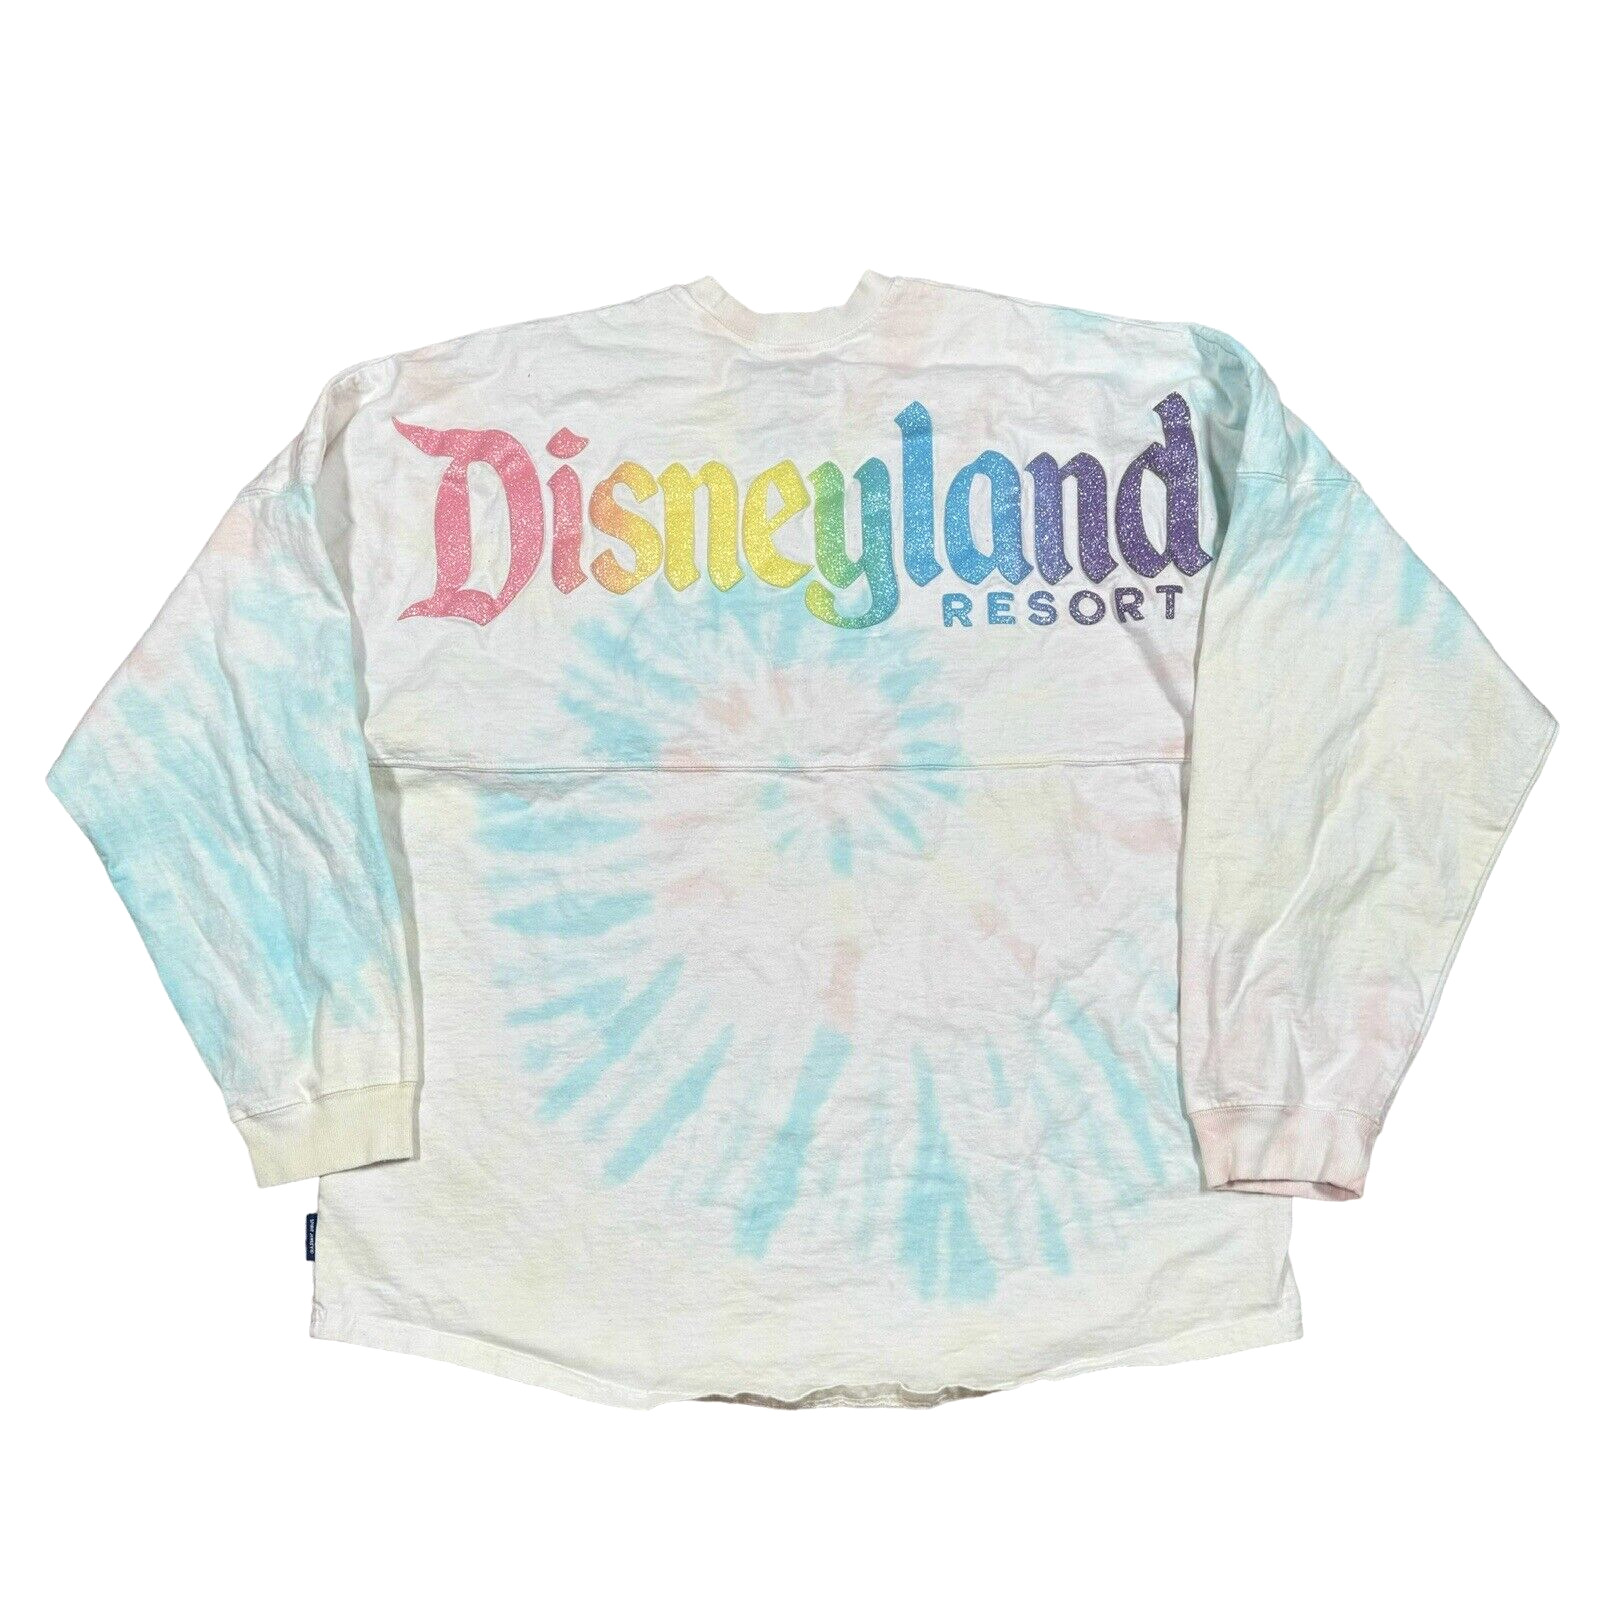 Disneyland Resort Women's Spirit Jersey Pastel Tie Dye Rainbow Glitter XL Shirt